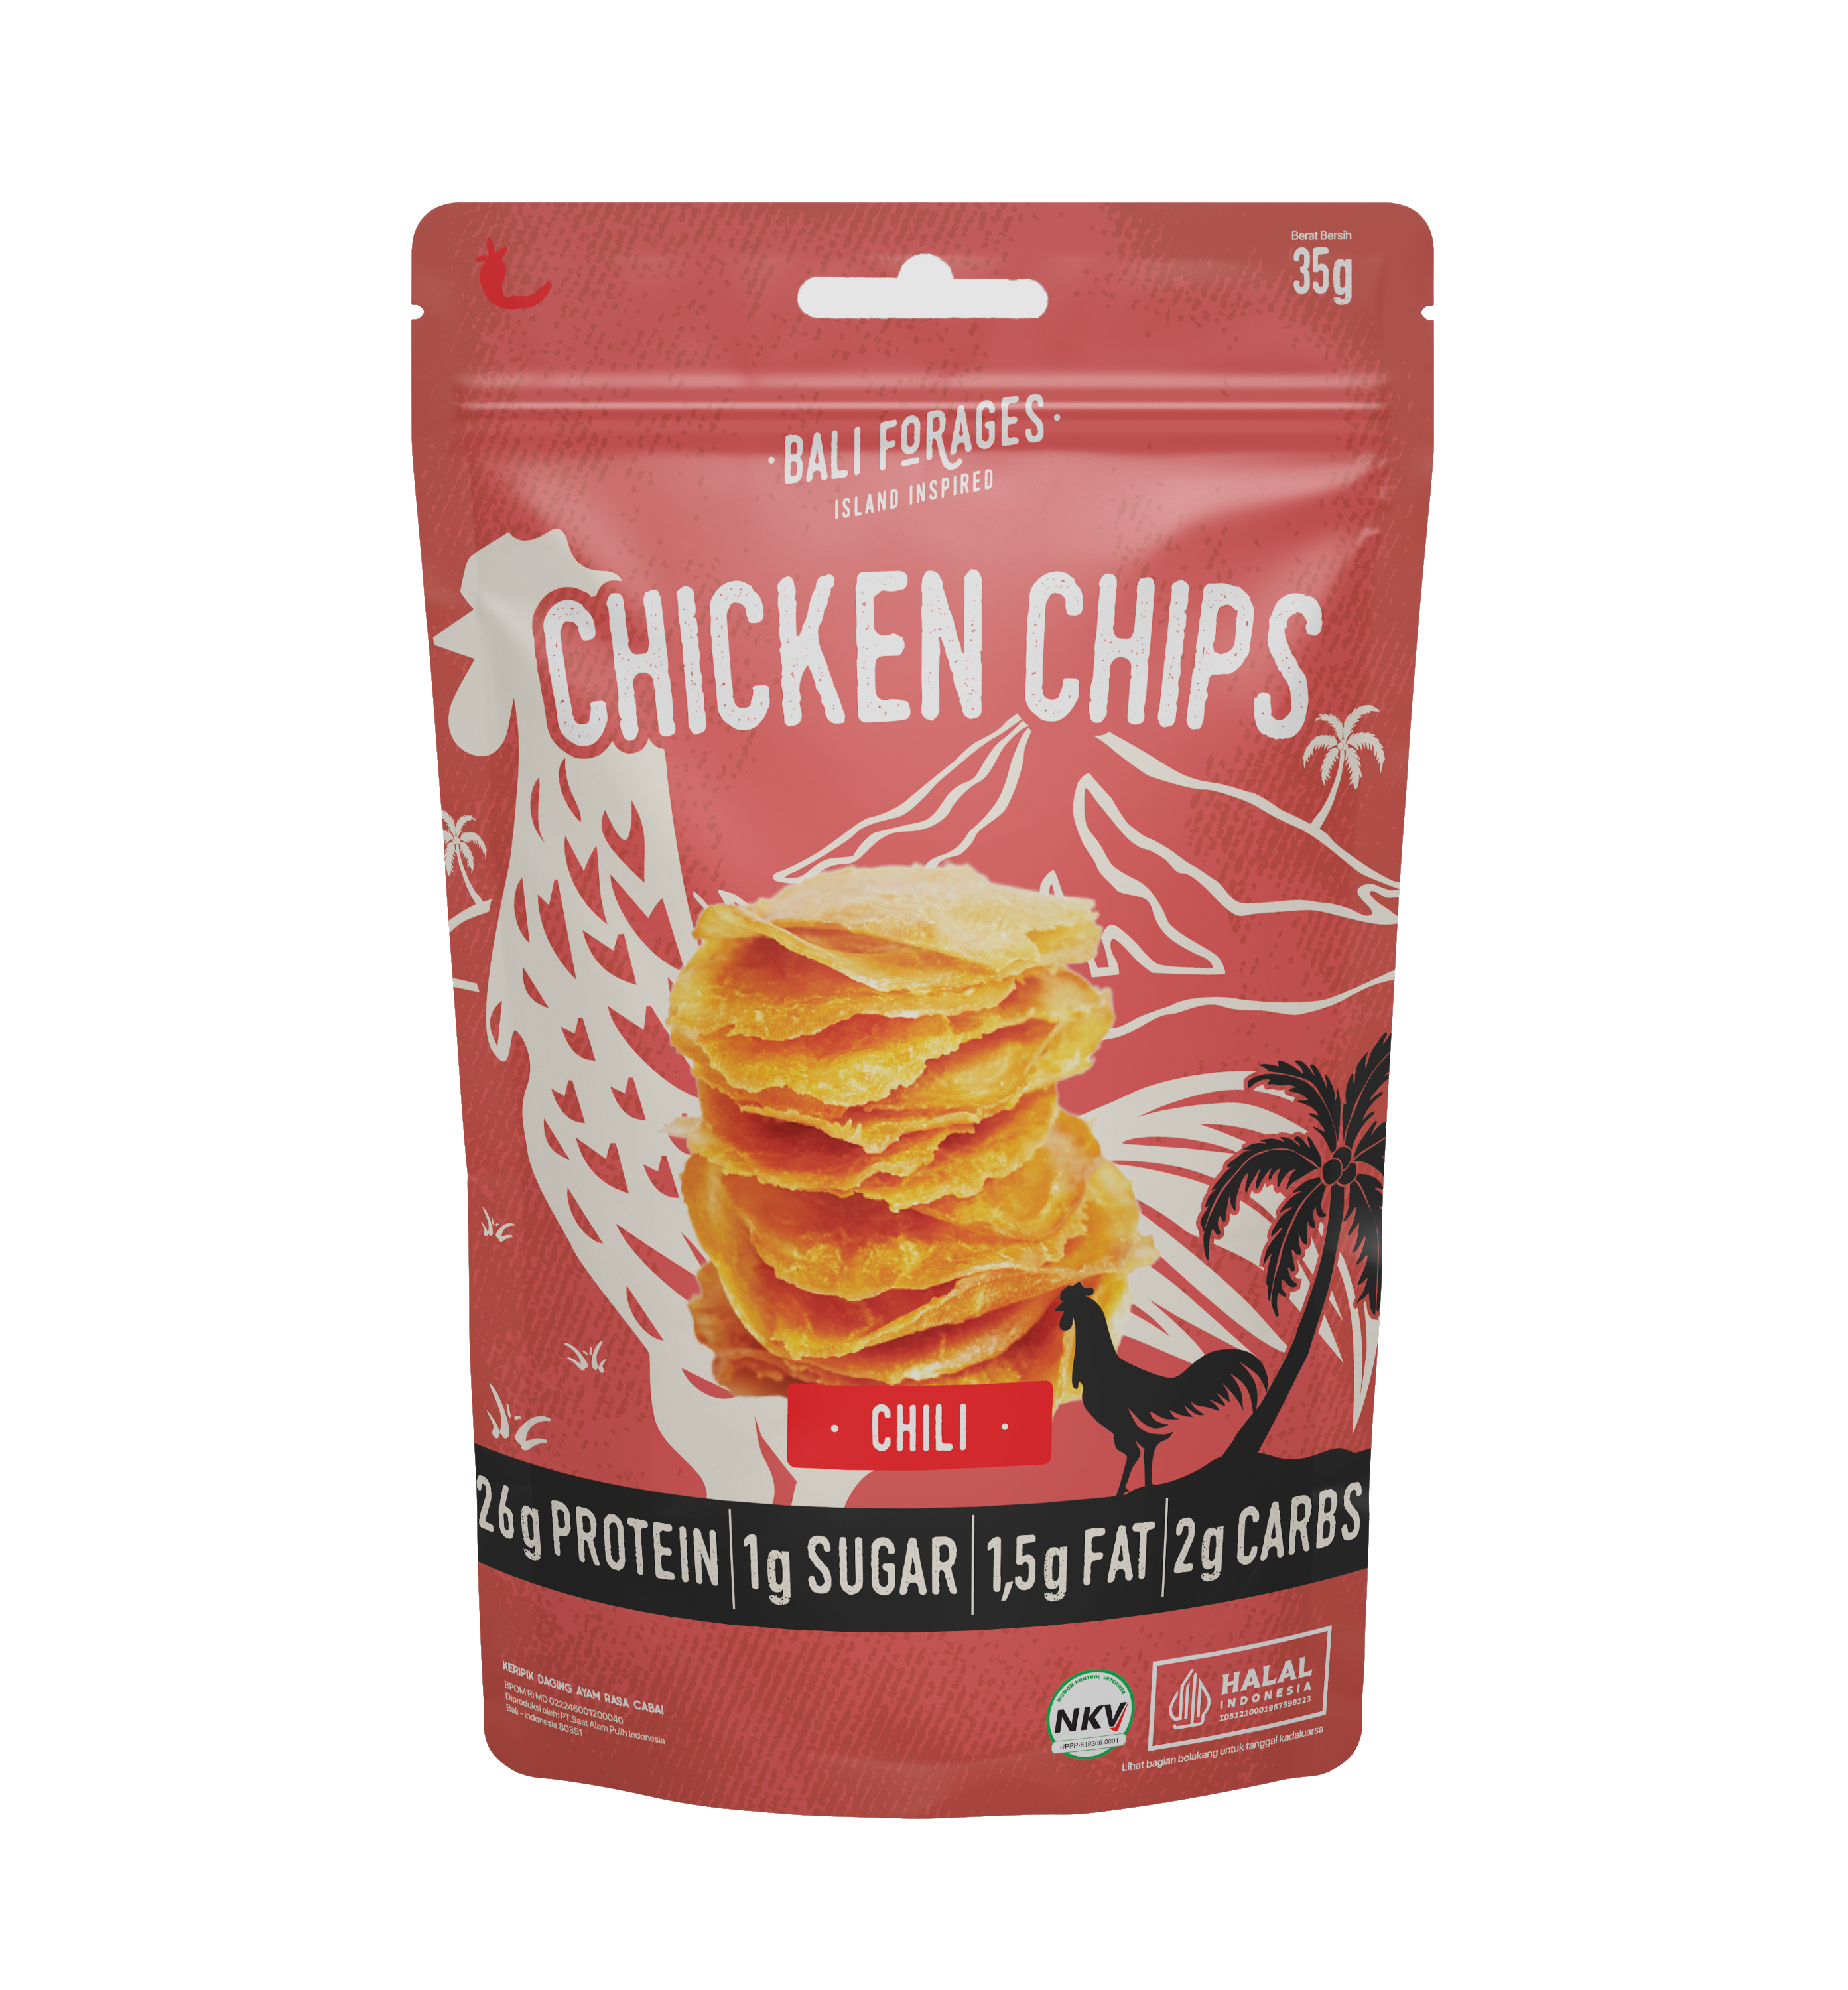 Chicken Chips Chili